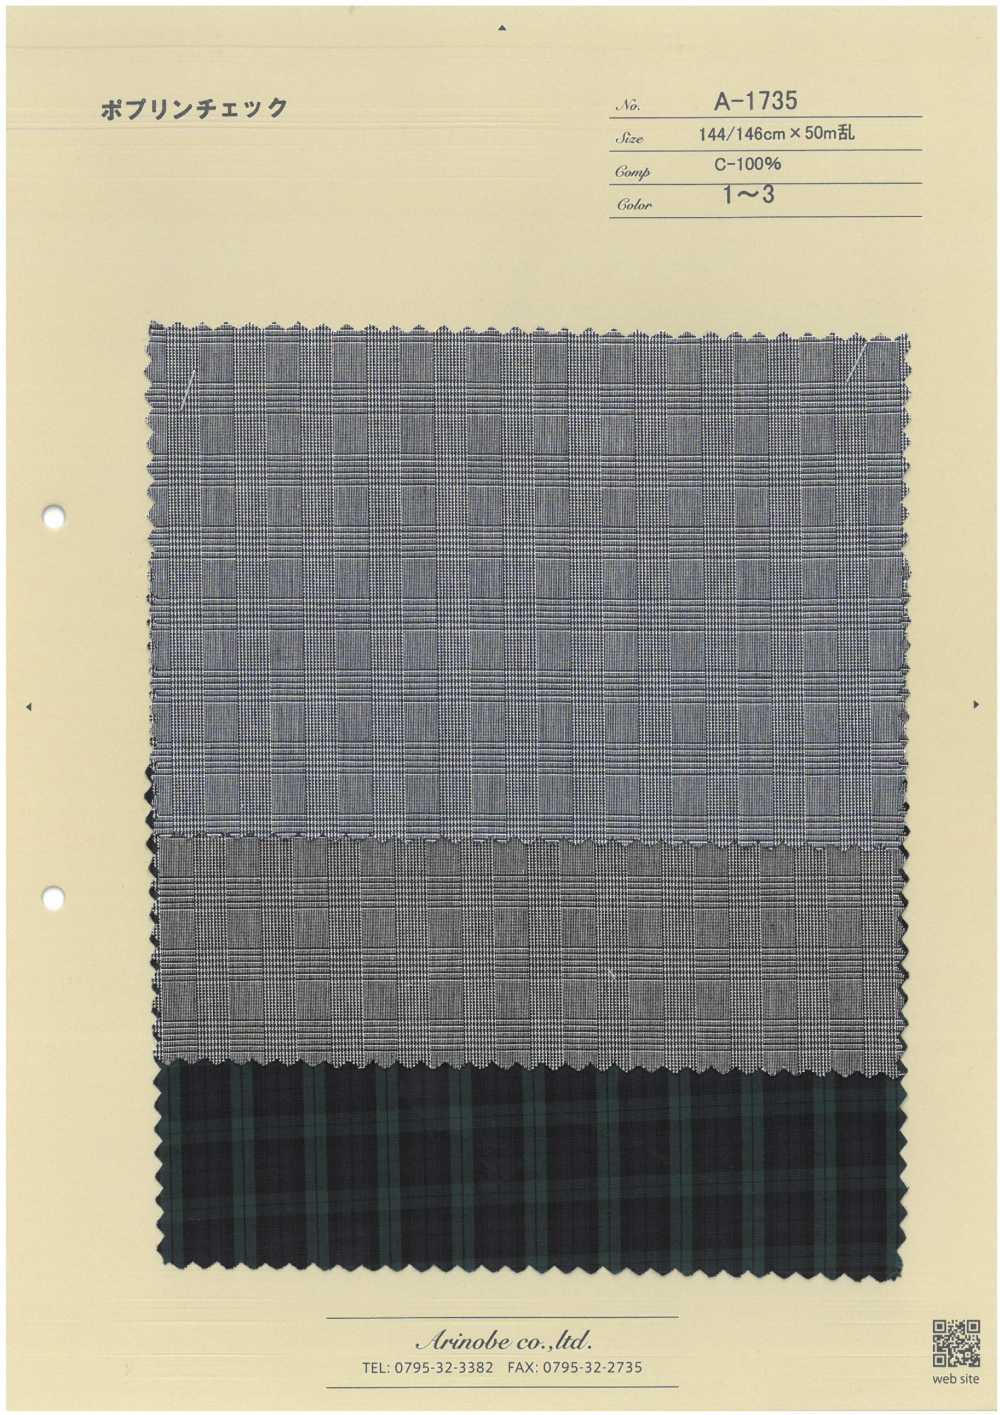 A-1735 Poplin Check[Textile / Fabric] ARINOBE CO., LTD.